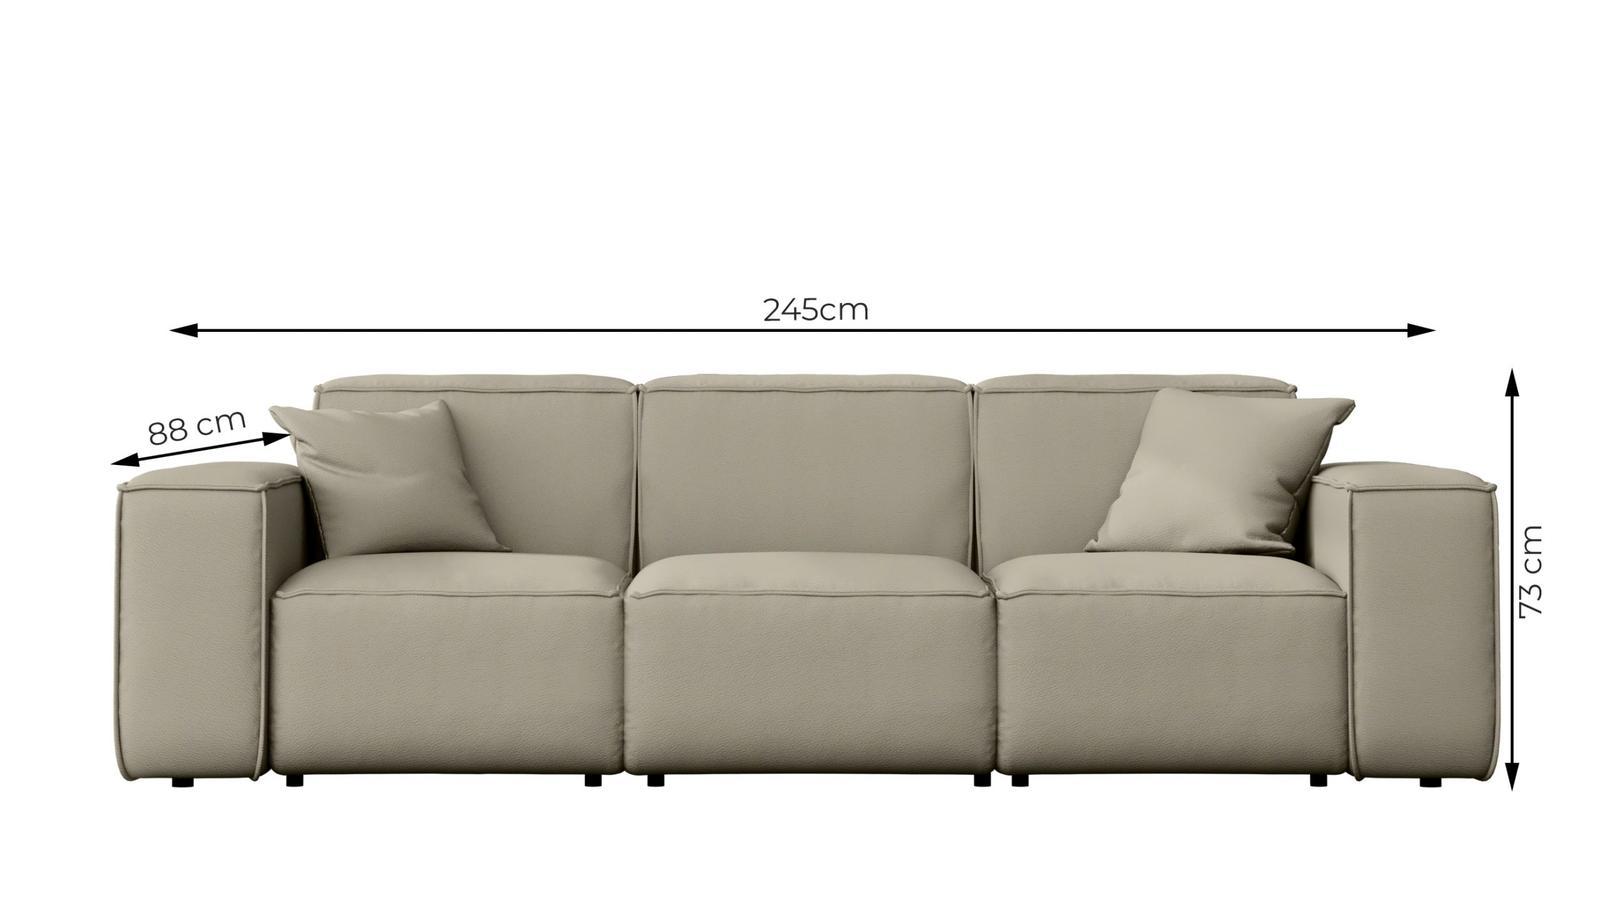 Sofa ogrodowa MALIBU 245x103x88 cm wodoodporna UV 3-os + 2 poduszki do ogrodu ciemnobeżowa nr. 3